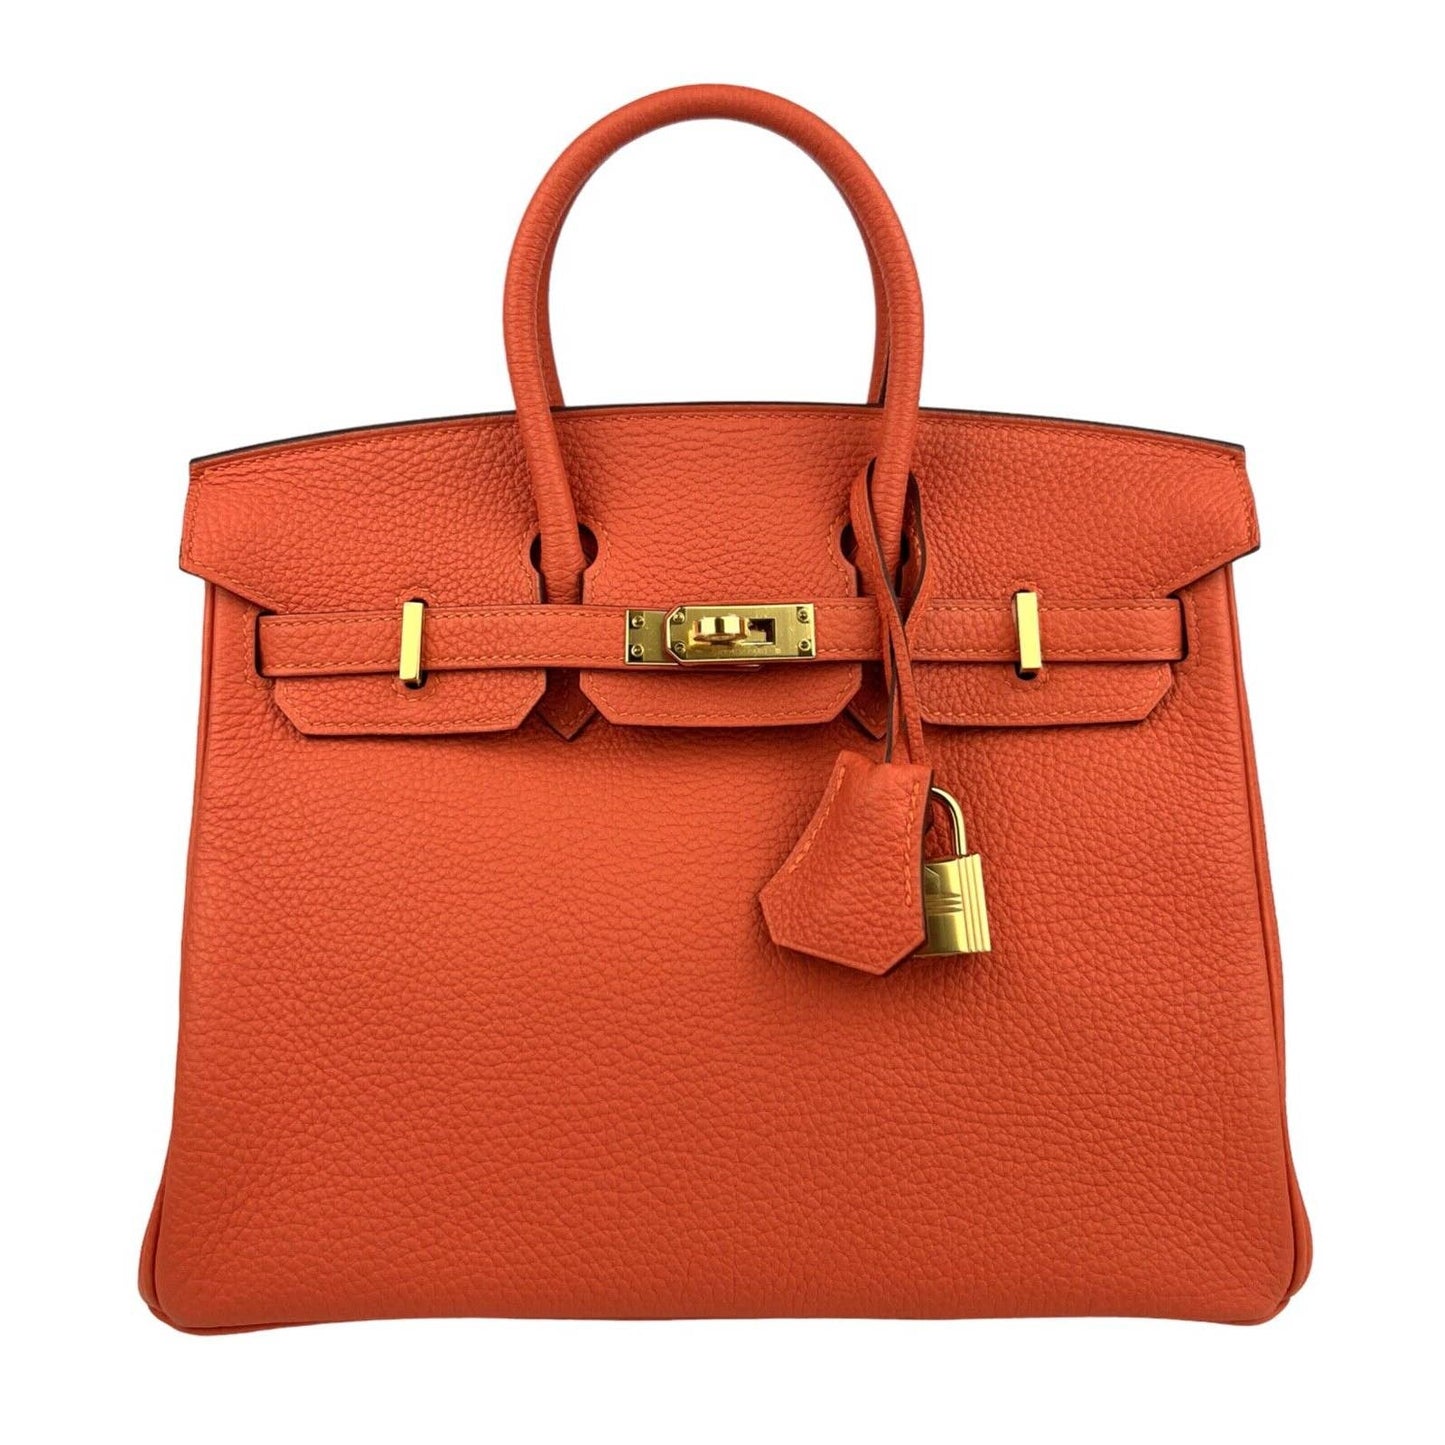 Hermes Birkin 25 Feu Orange Togo Handbag Bag Gold Hardware 2019